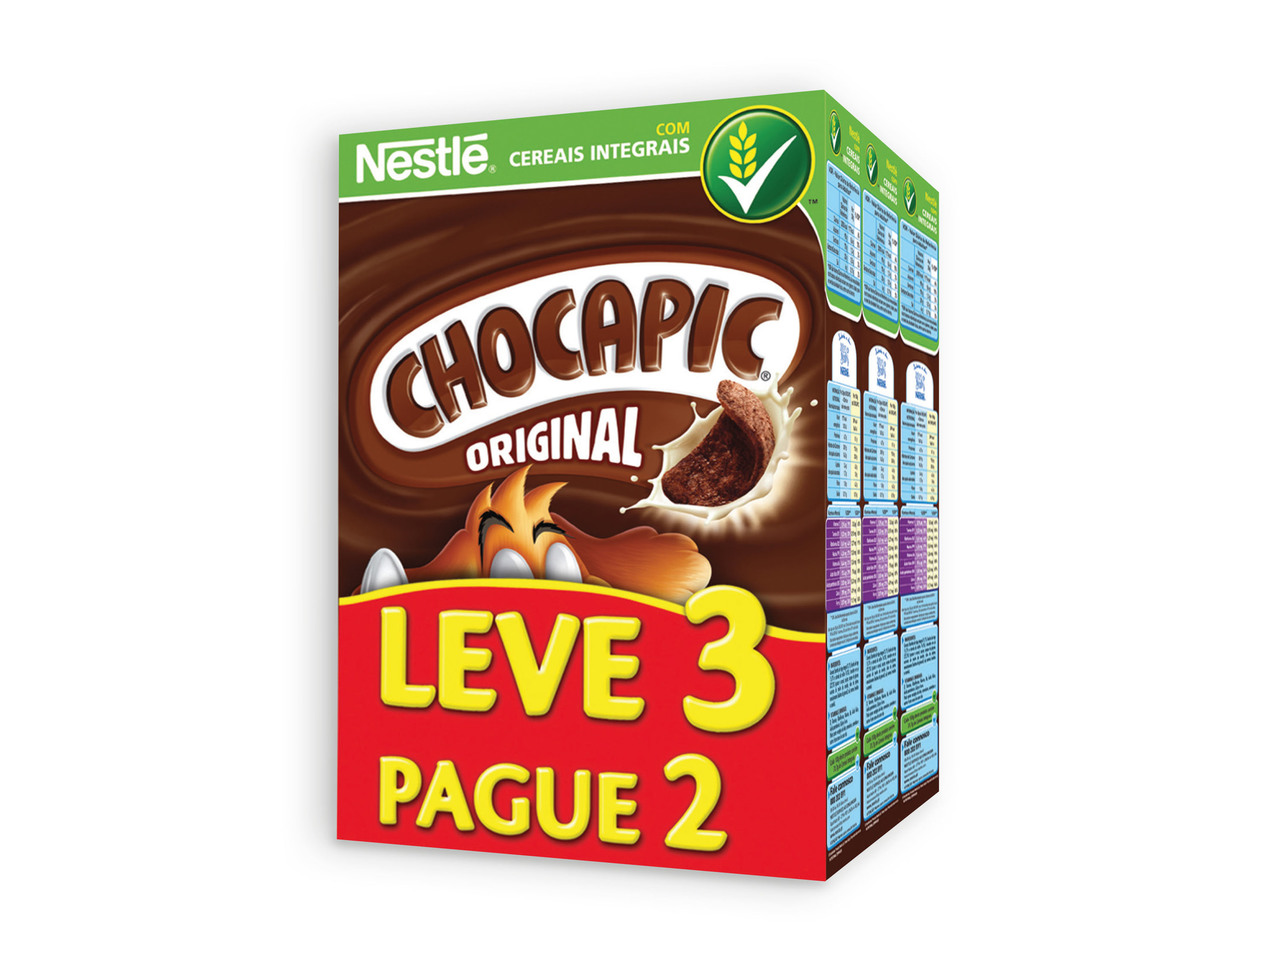 NESTLÉ(R) Chocapic Pack